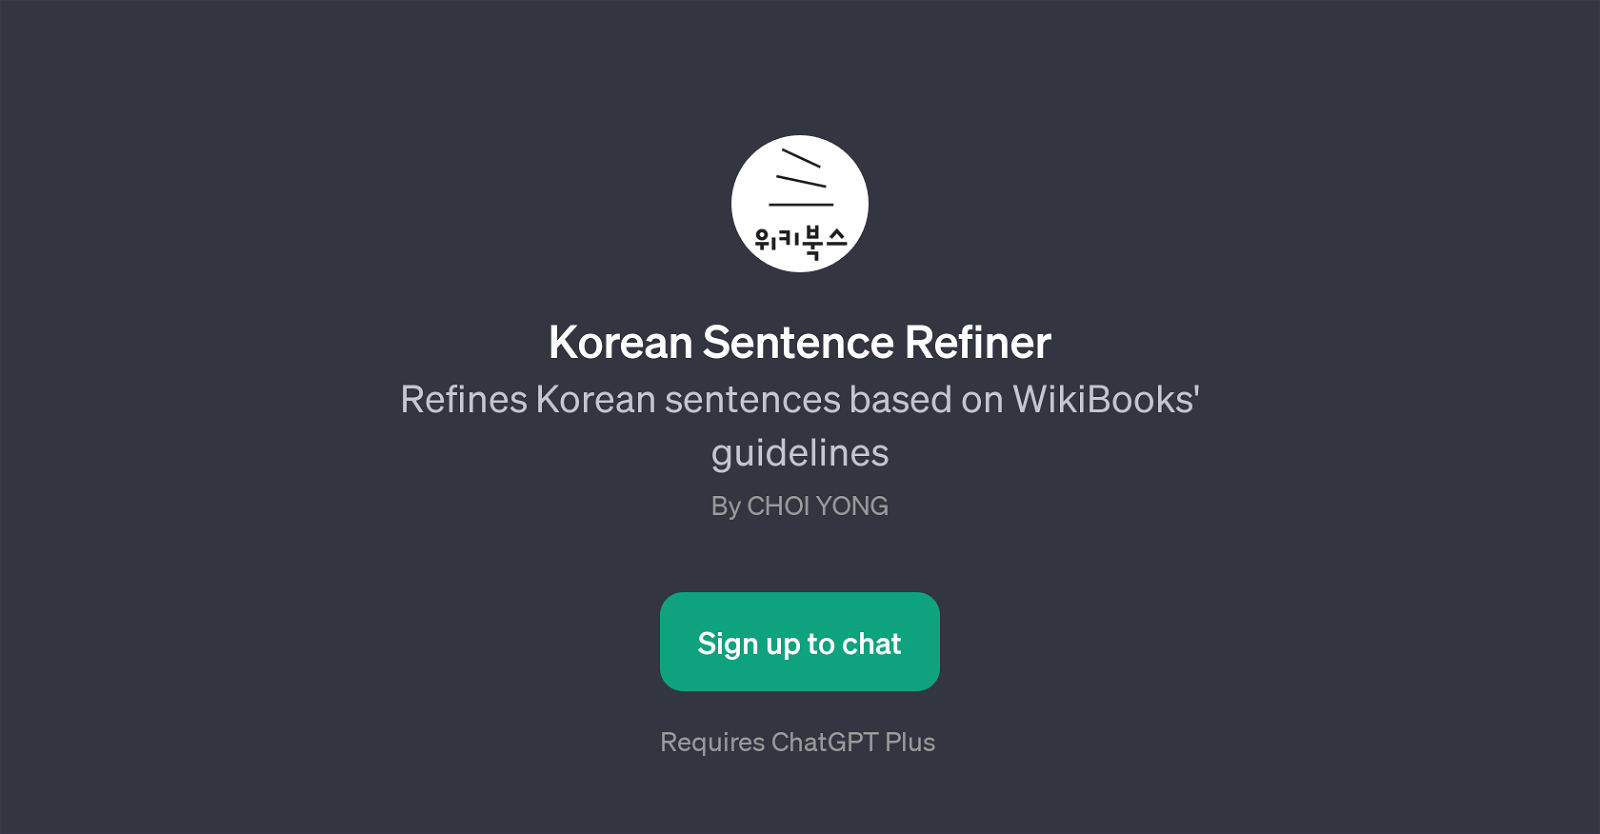 Korean Sentence Refiner website